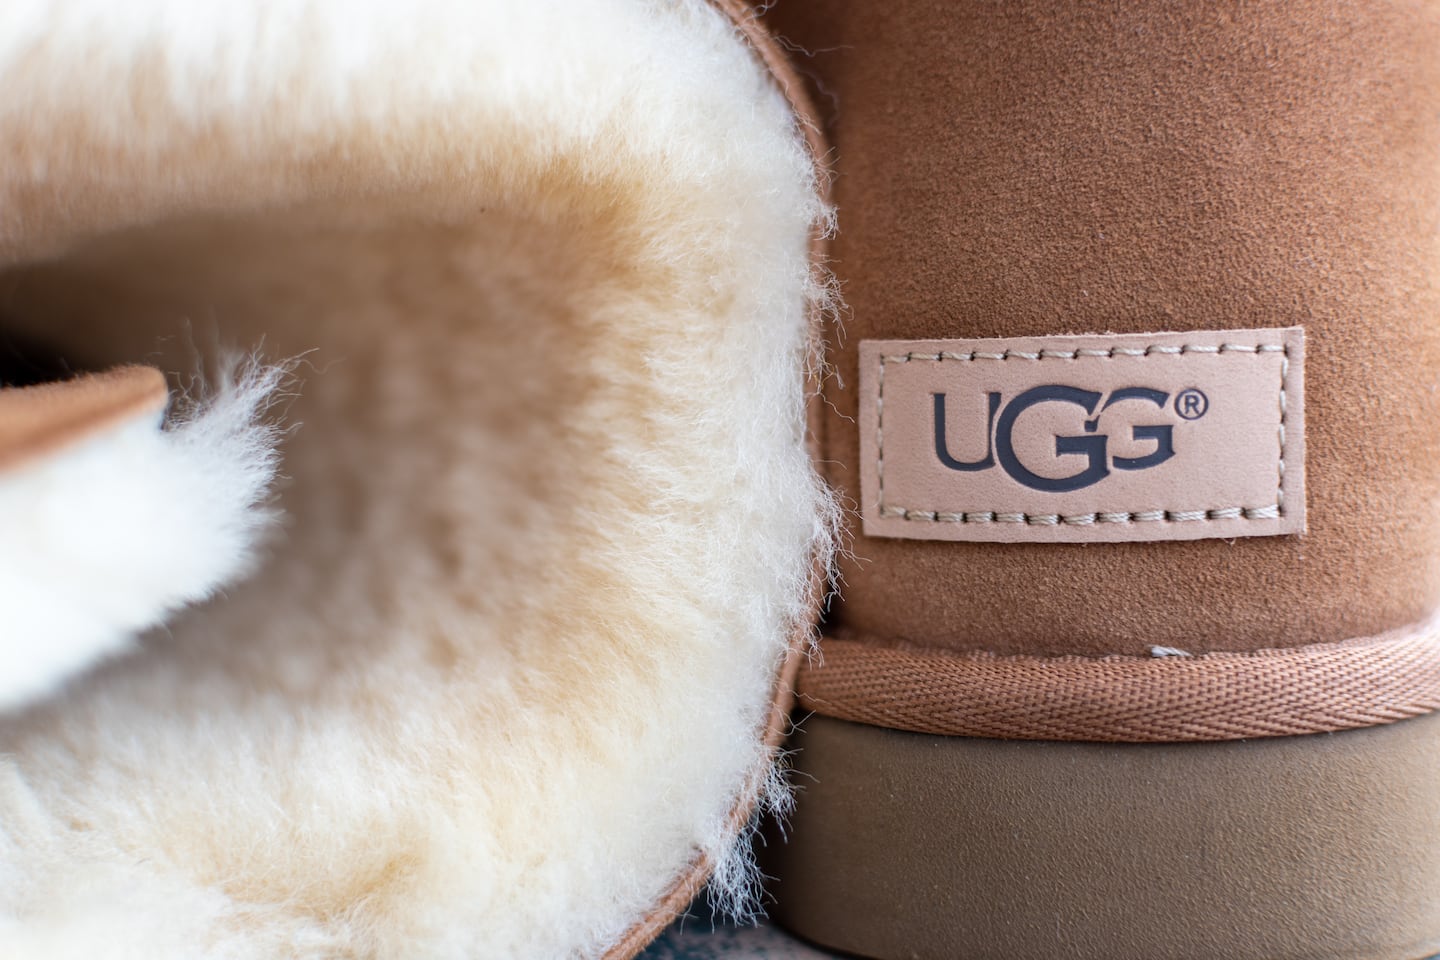 Ugg boots. Shutterstock.